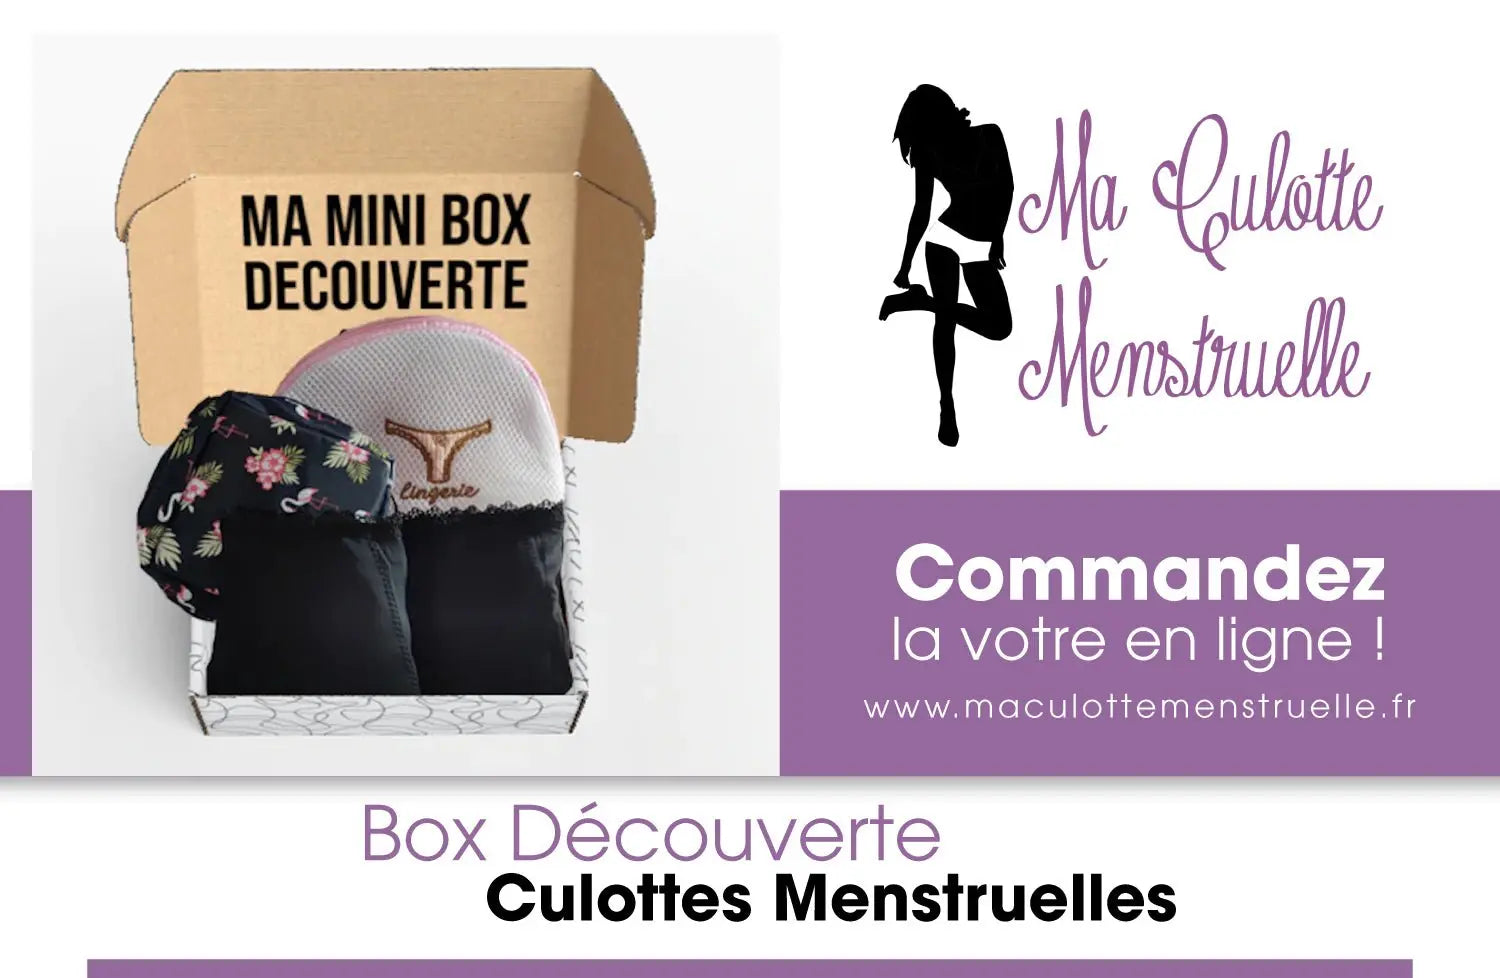 Des lots de culottes menstruelles de qualité dans nos box découverte - Ma Culotte Menstruelle